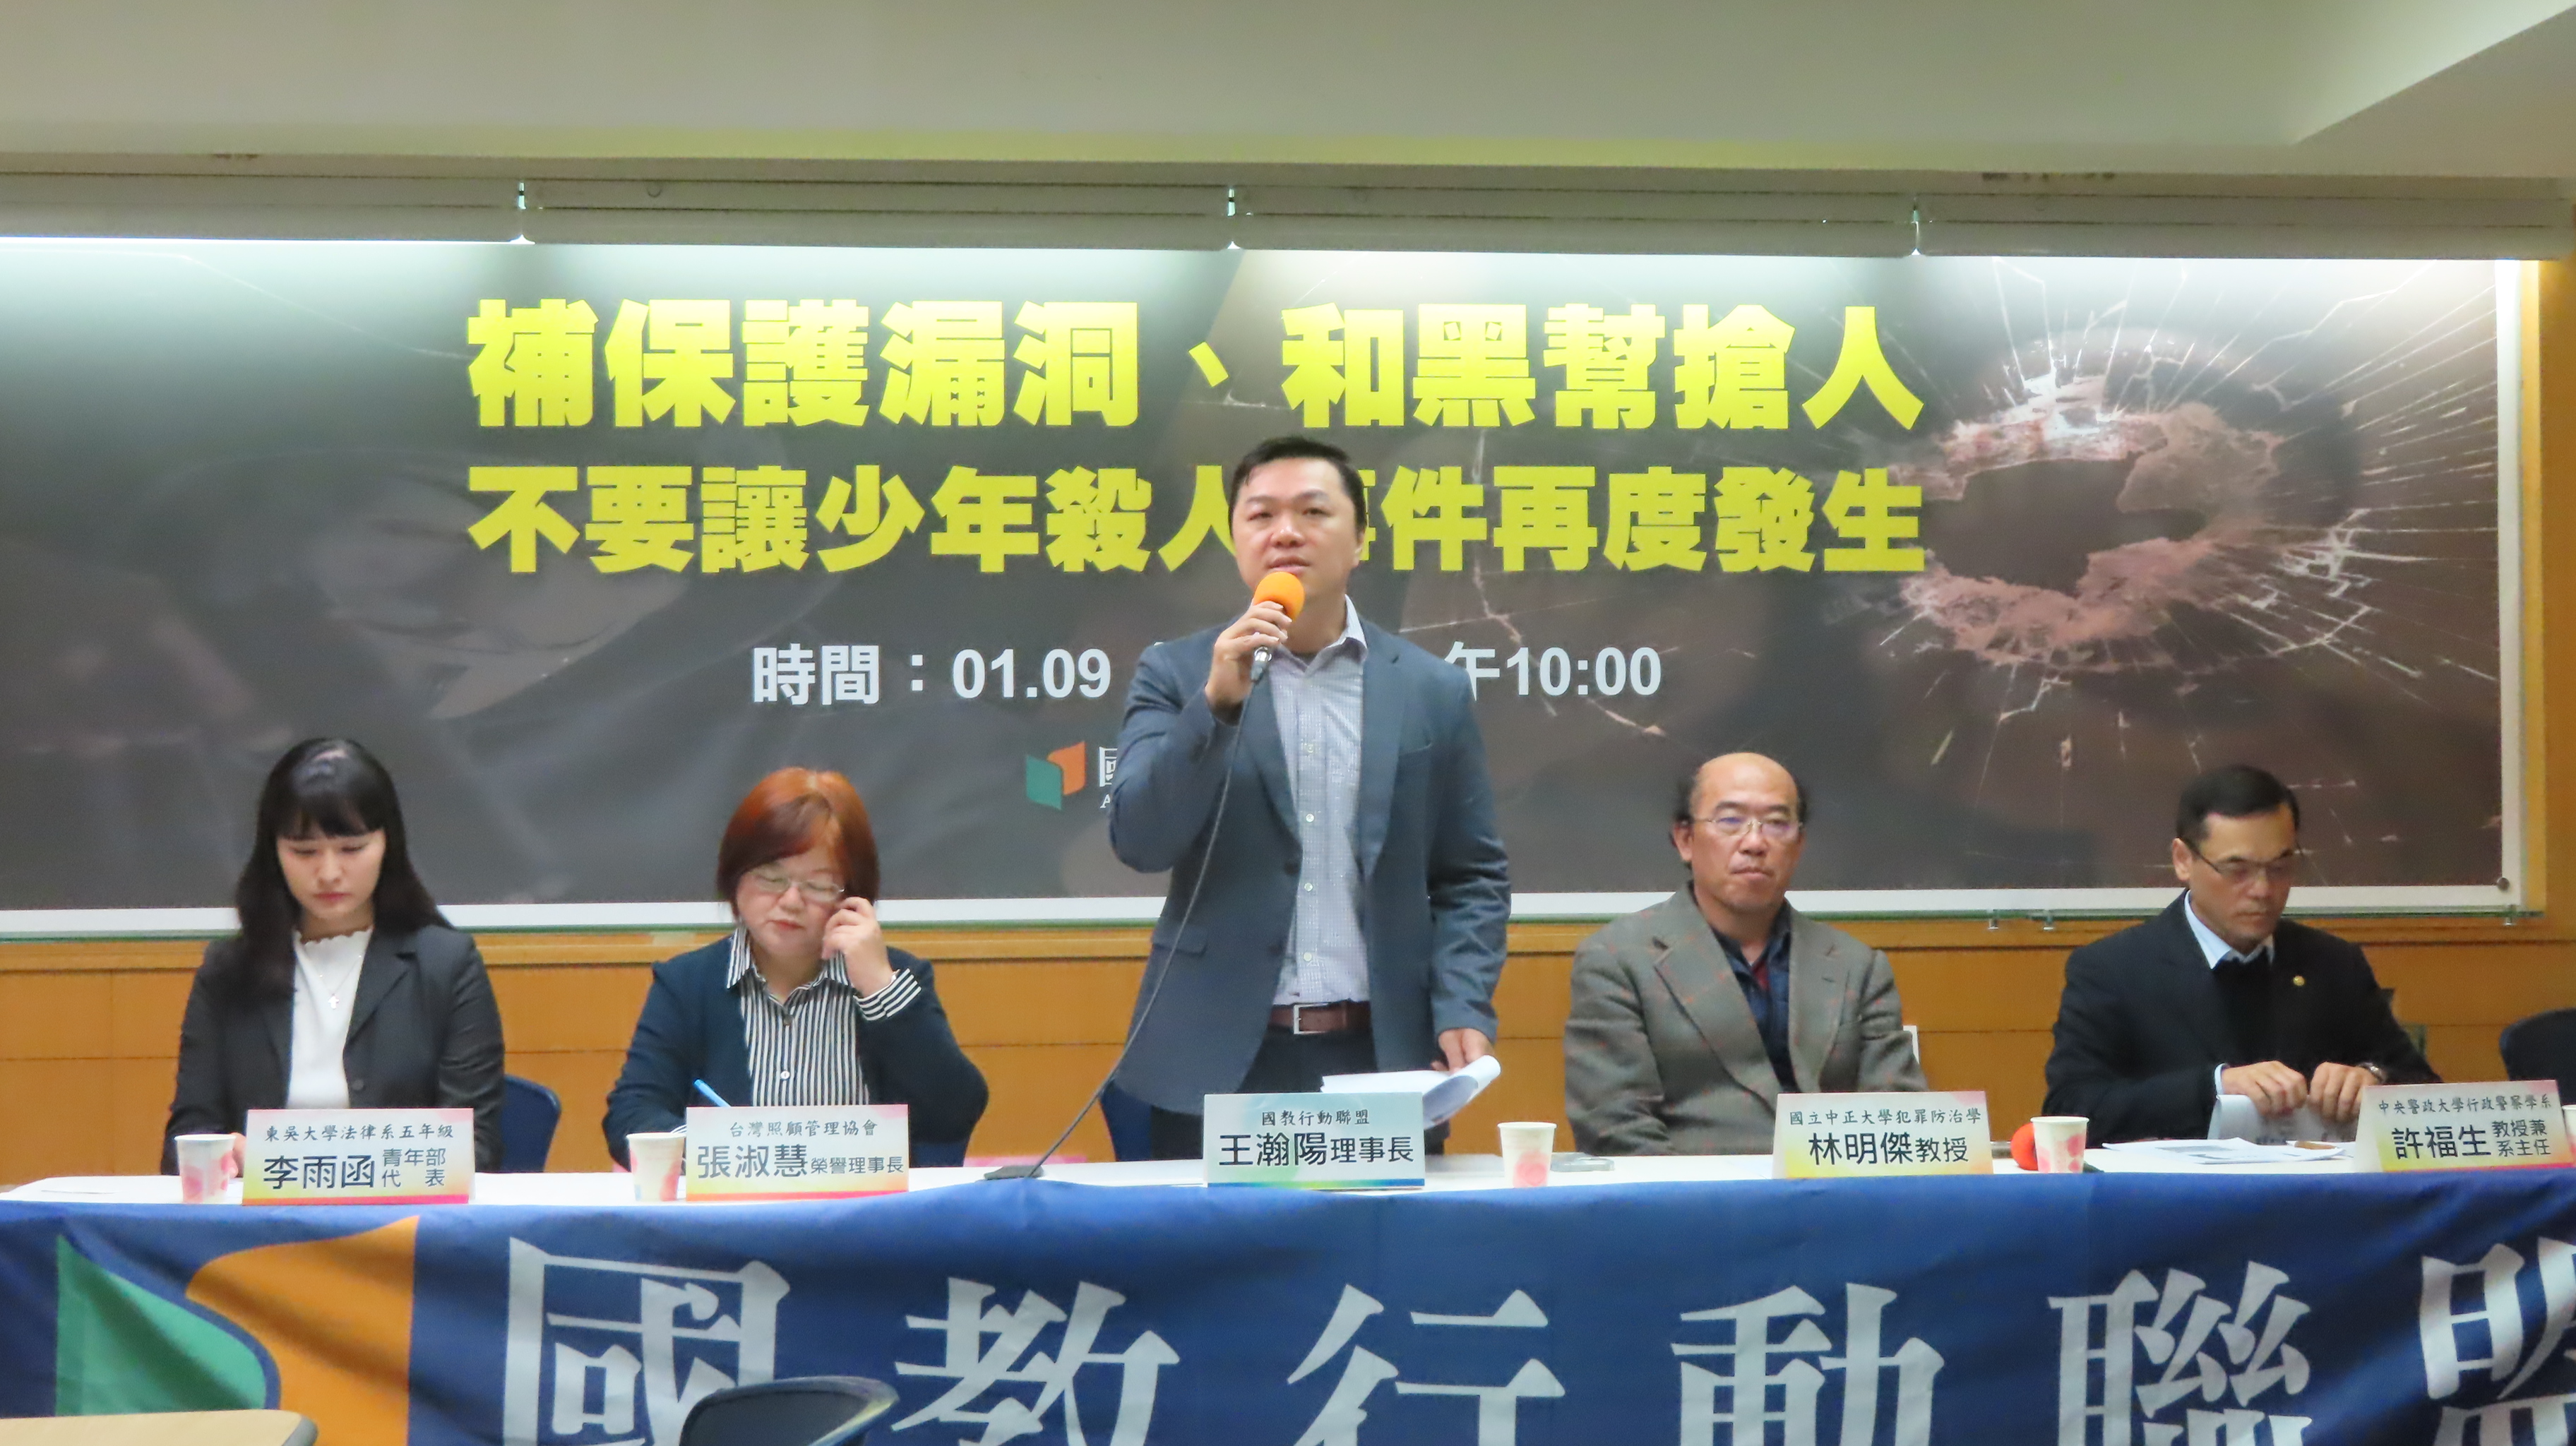 國教盟理事長王瀚陽提出建言及訴求。